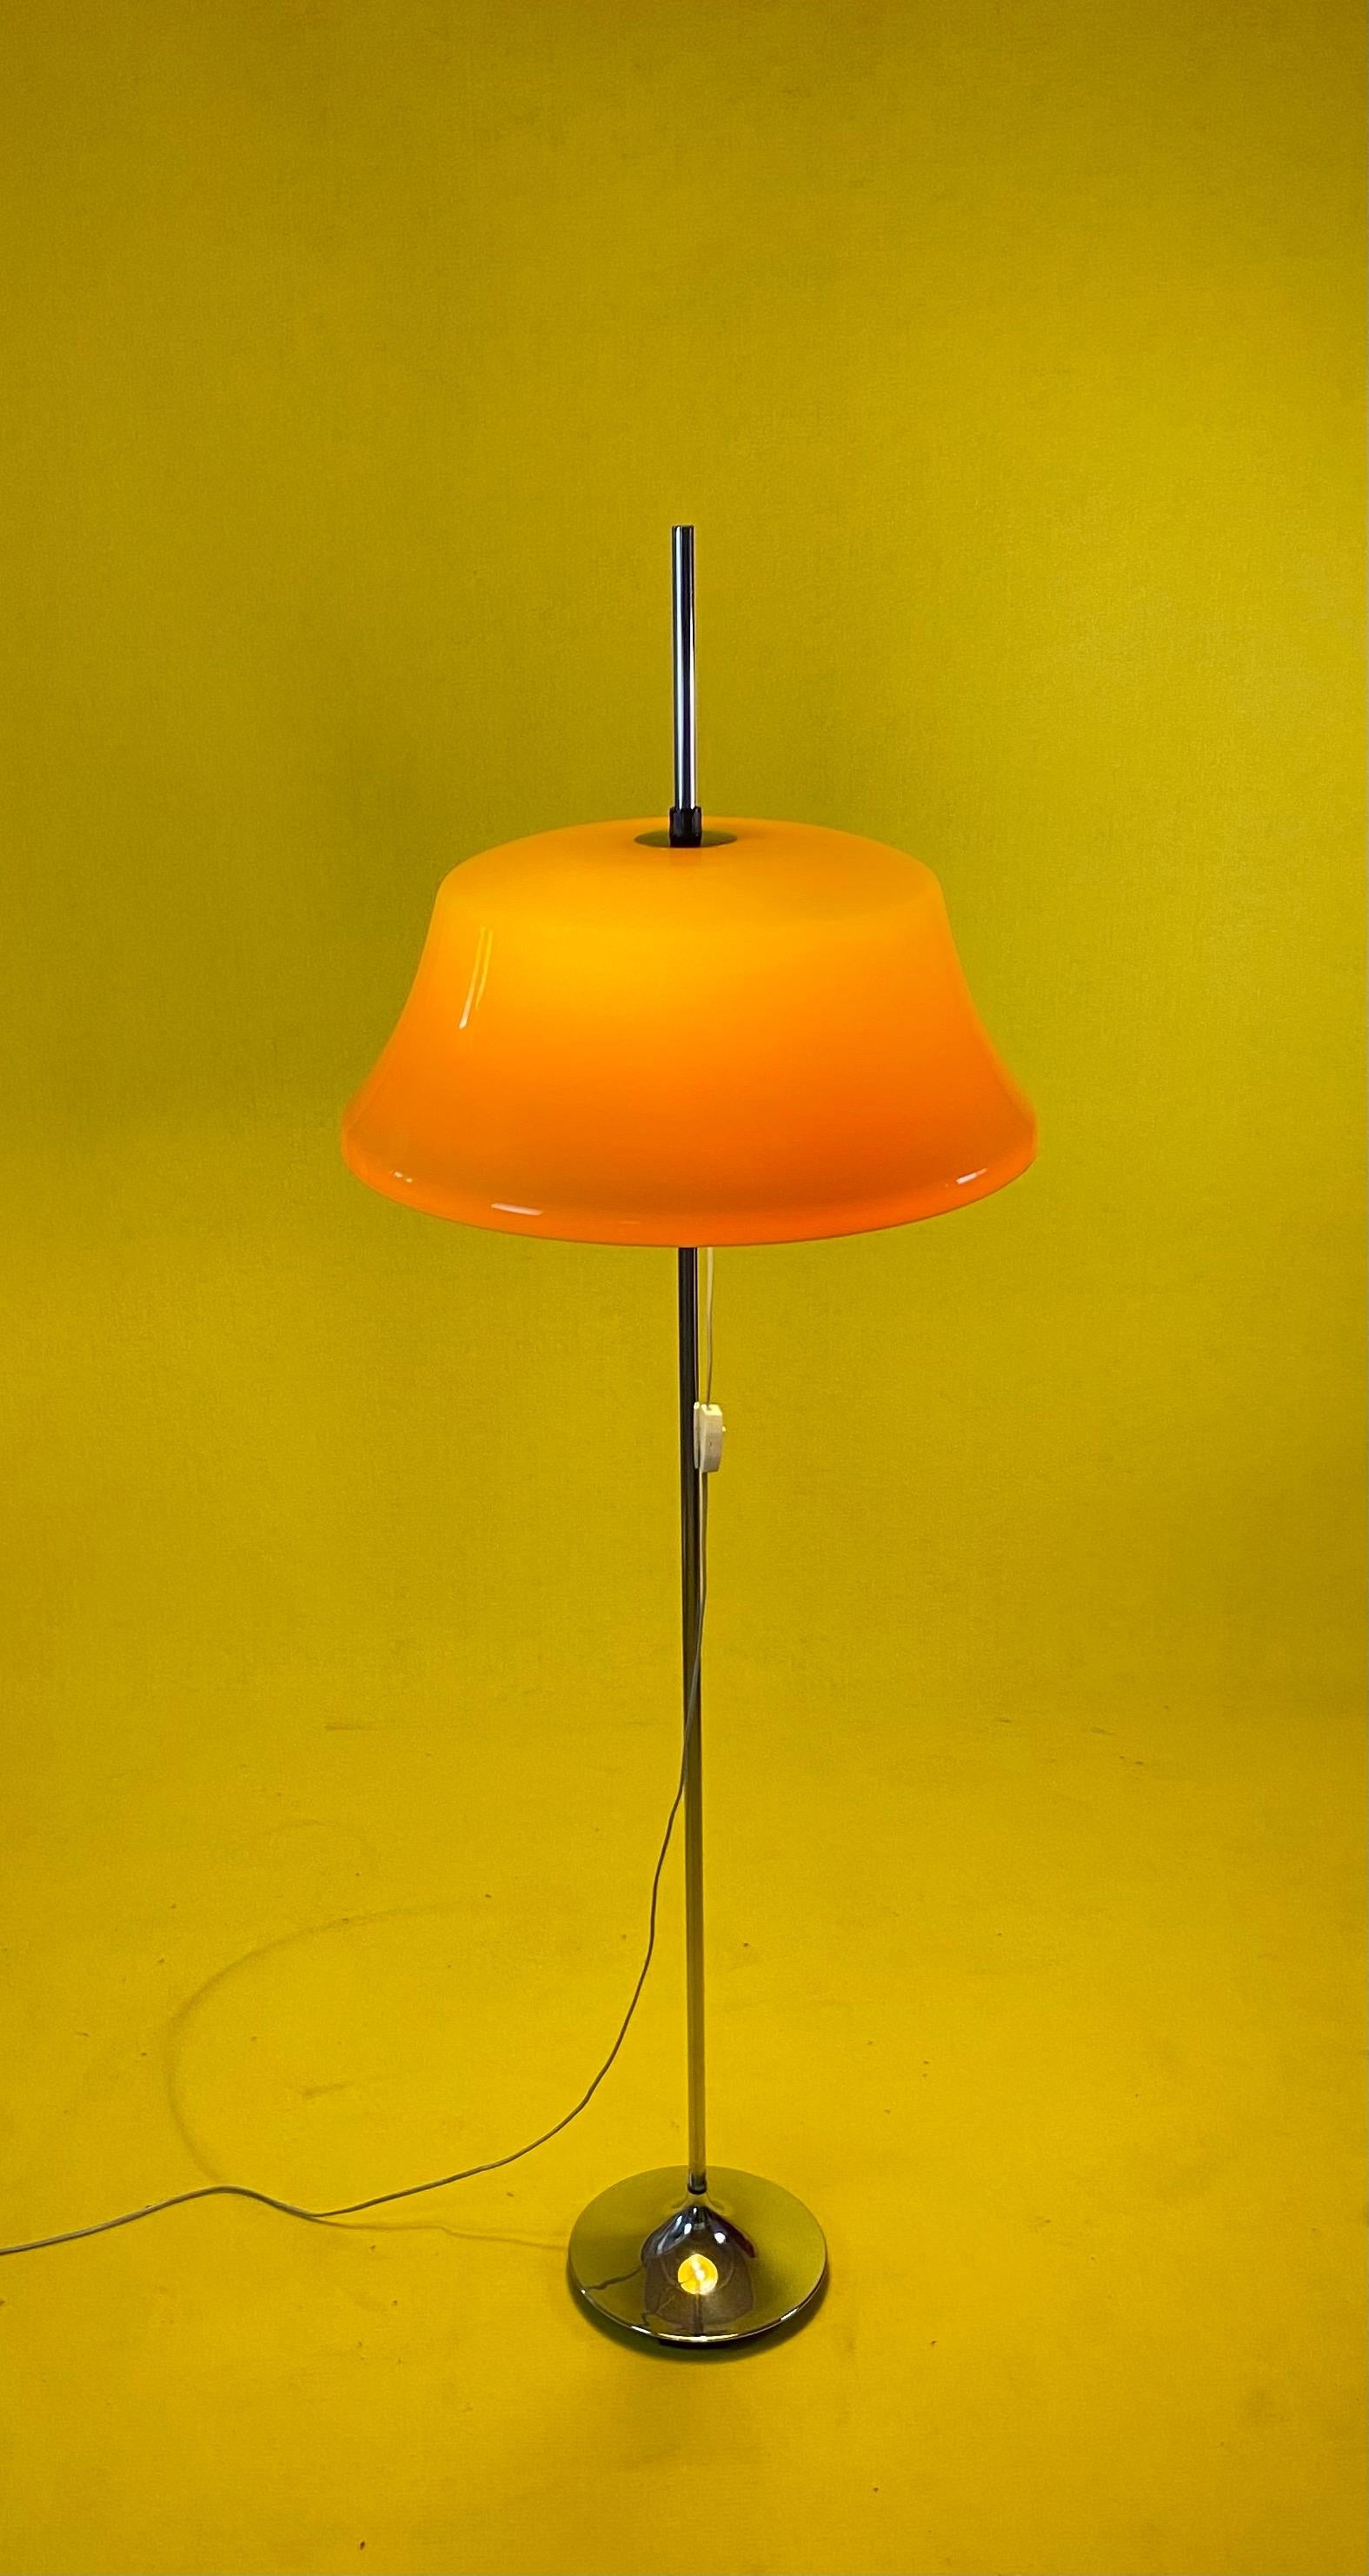 Schöne und seltene Space Age Stehleuchte von Frank Bentler für Wila, Deutschland, 1970er Jahre.

Großer gelber Acrylschirm mit zwei Glühbirnen. Der Schirm ist höhenverstellbar und steht auf einem verchromten tulpenförmigen Sockel.

Der Zustand